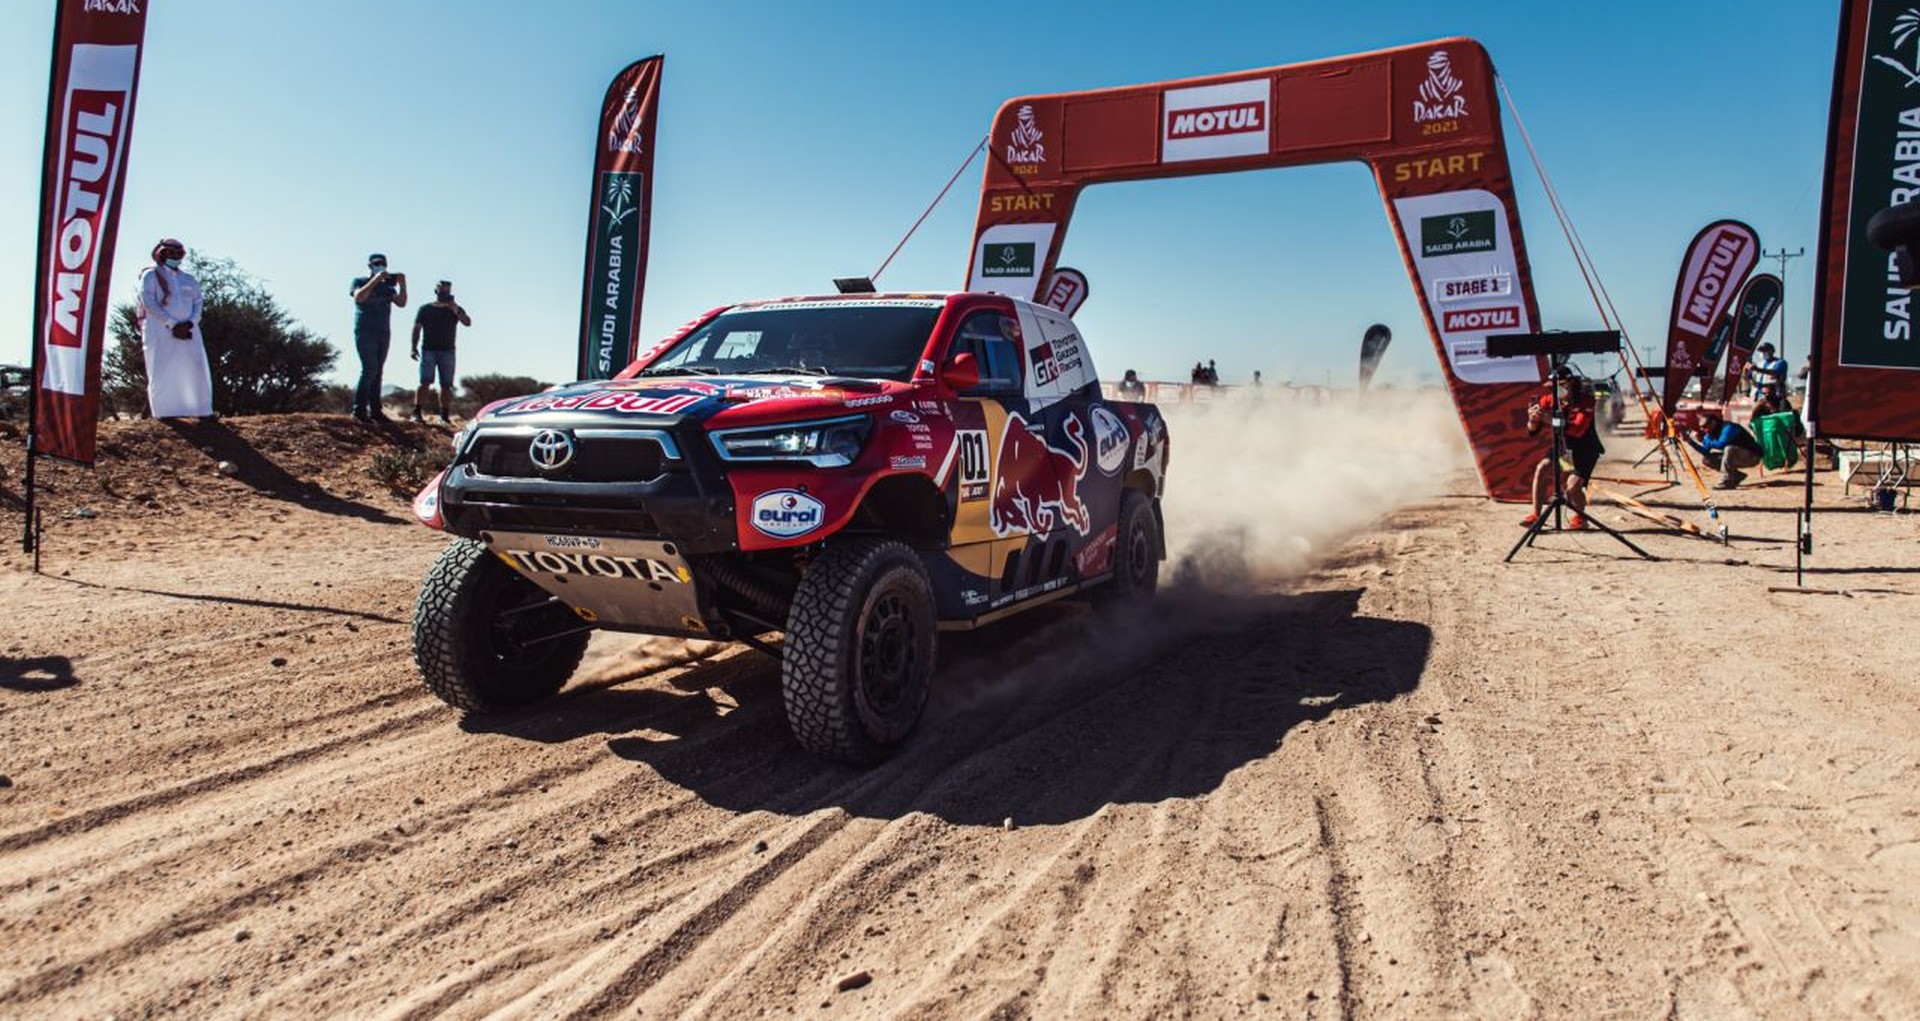 Toyoty w Rajdzie Dakar 2021. Hilux i Land Cruiser w pustynnym maratonie